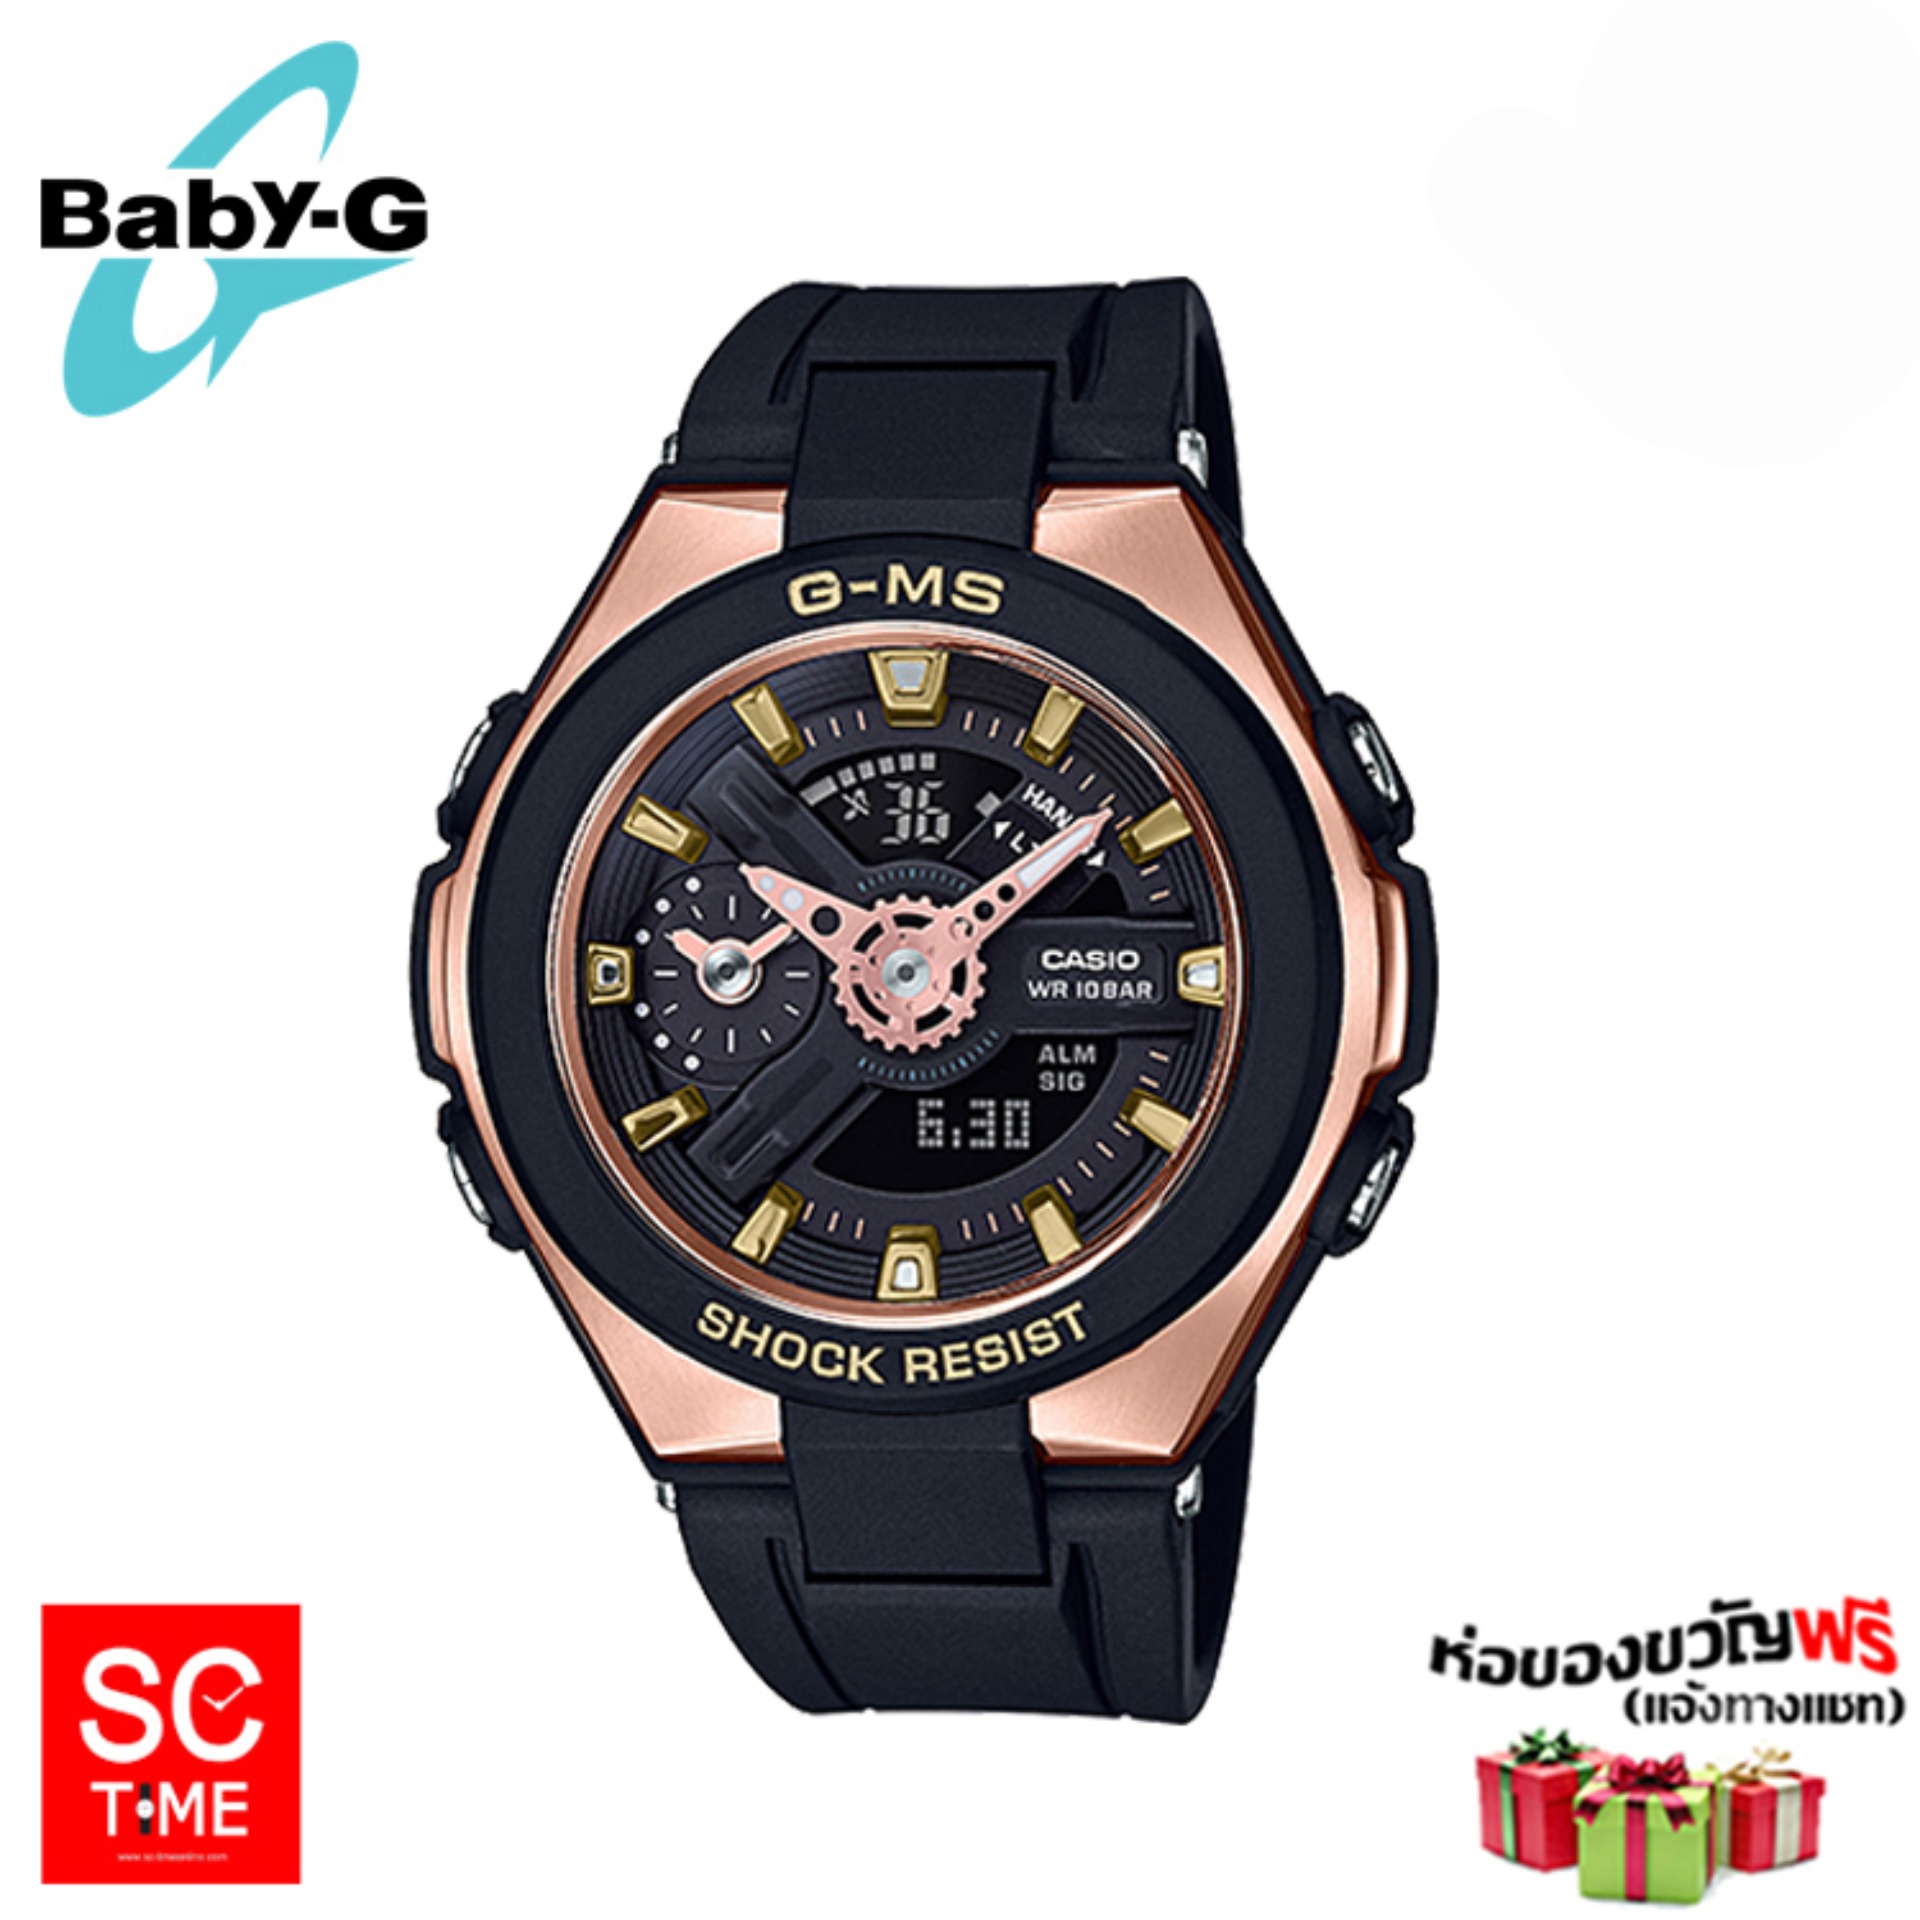 Casio Baby-G แท้ นาฬิกาข้อมือหญิง รุ่น MSG-400G  (สินค้าใหม่ ของแท้ มีรับประกัน)  สีสายนาฬิกา ดำพิงค์โกลด์